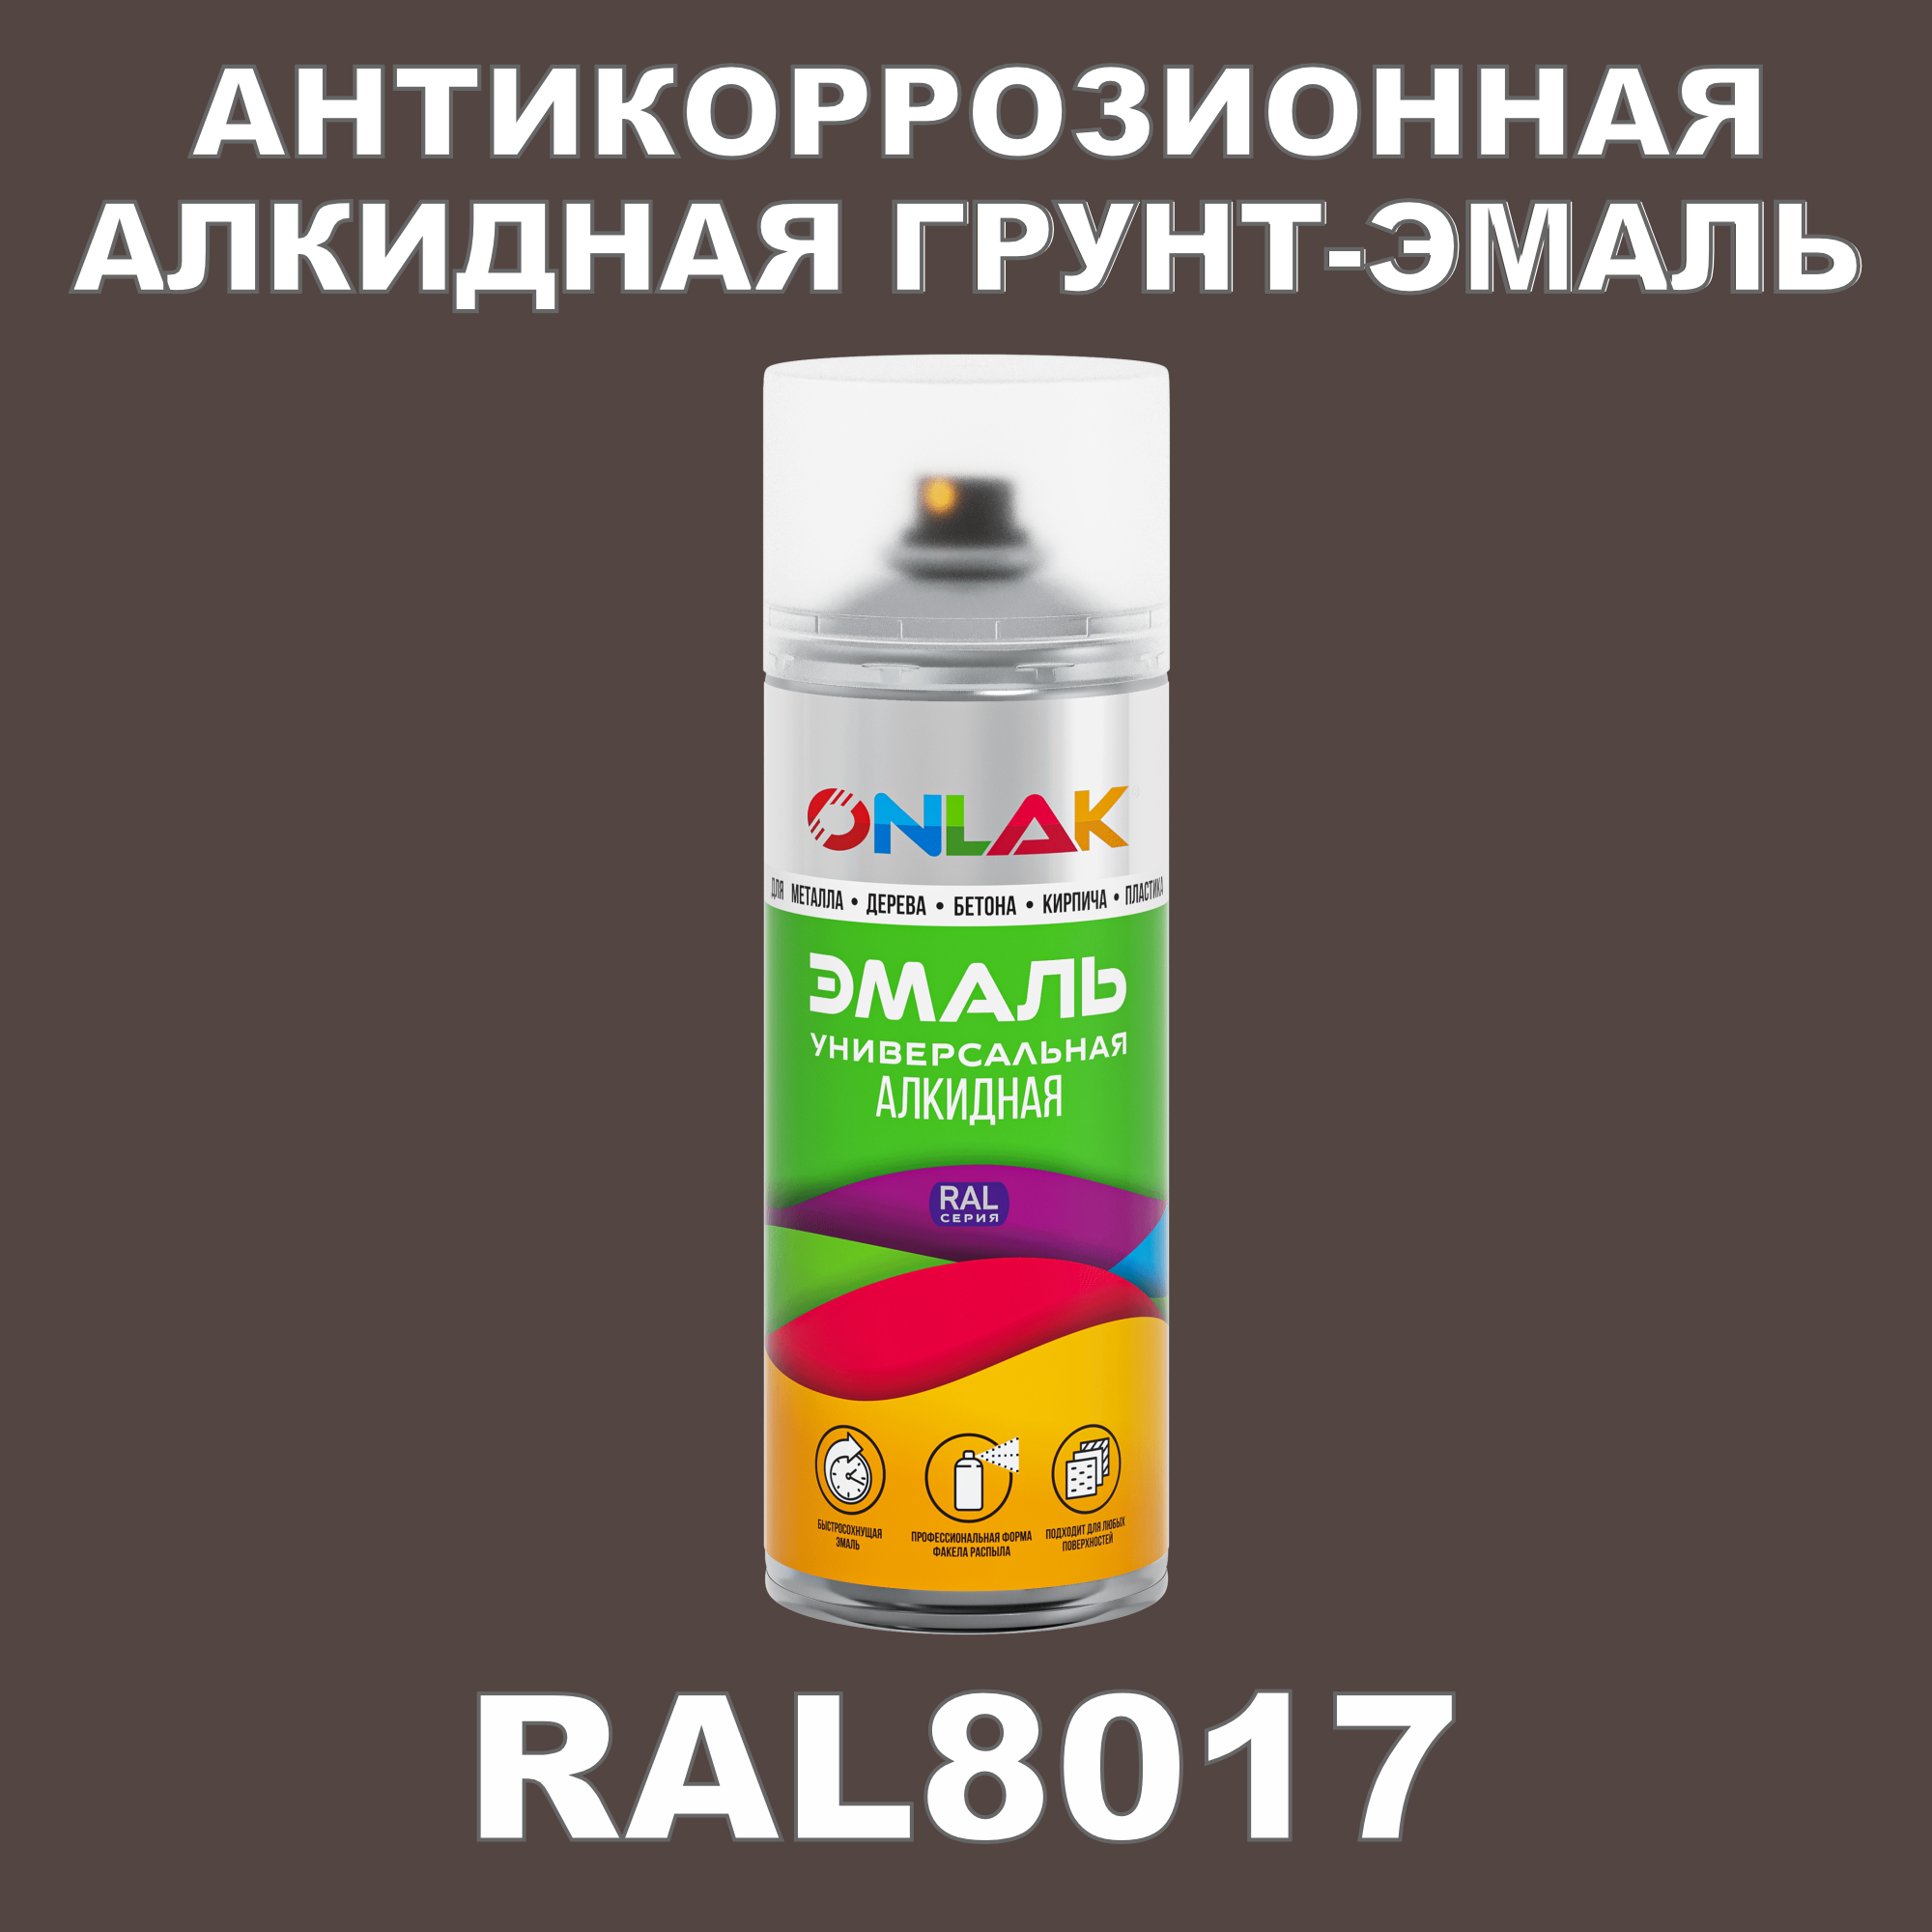 Антикоррозионная грунт-эмаль ONLAK RAL8017 полуматовая для металла и защиты от ржавчины